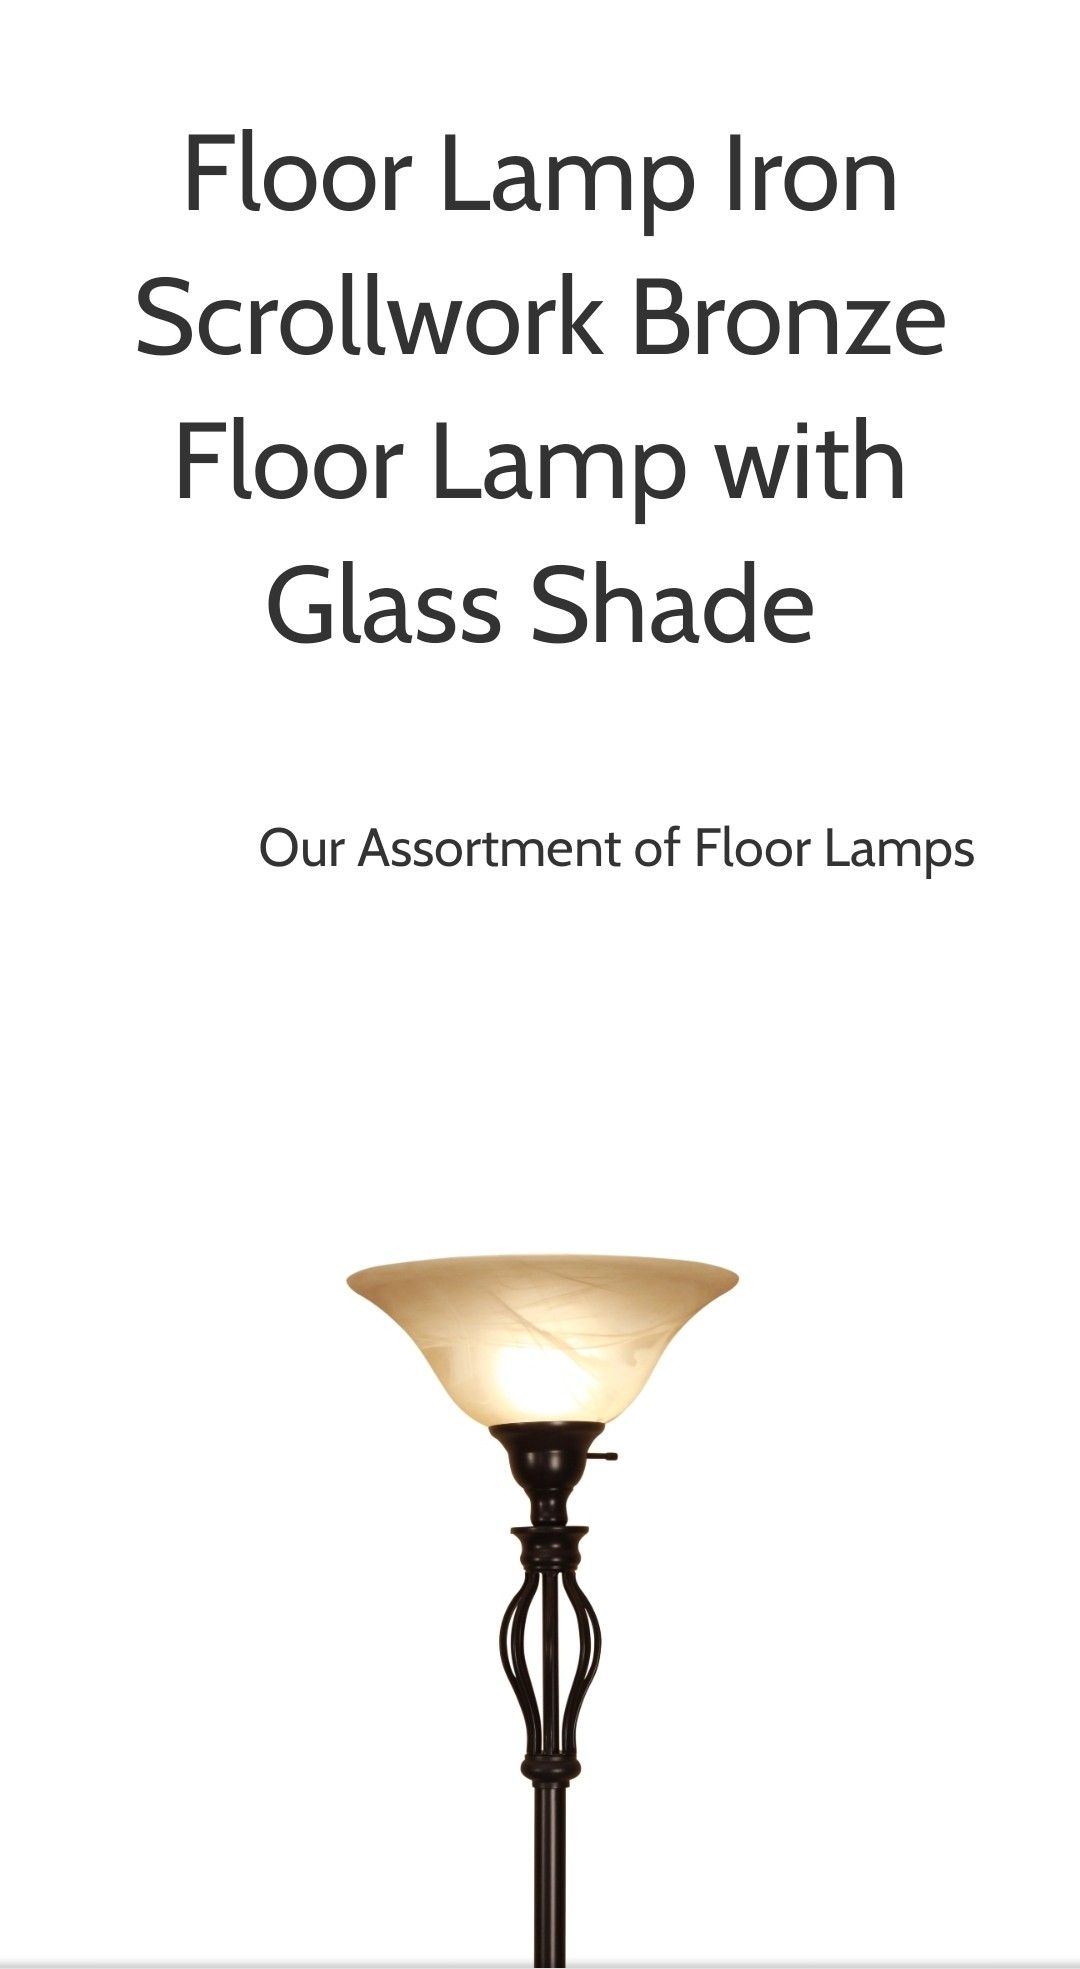 Floor Lamp Iron Scoll Design